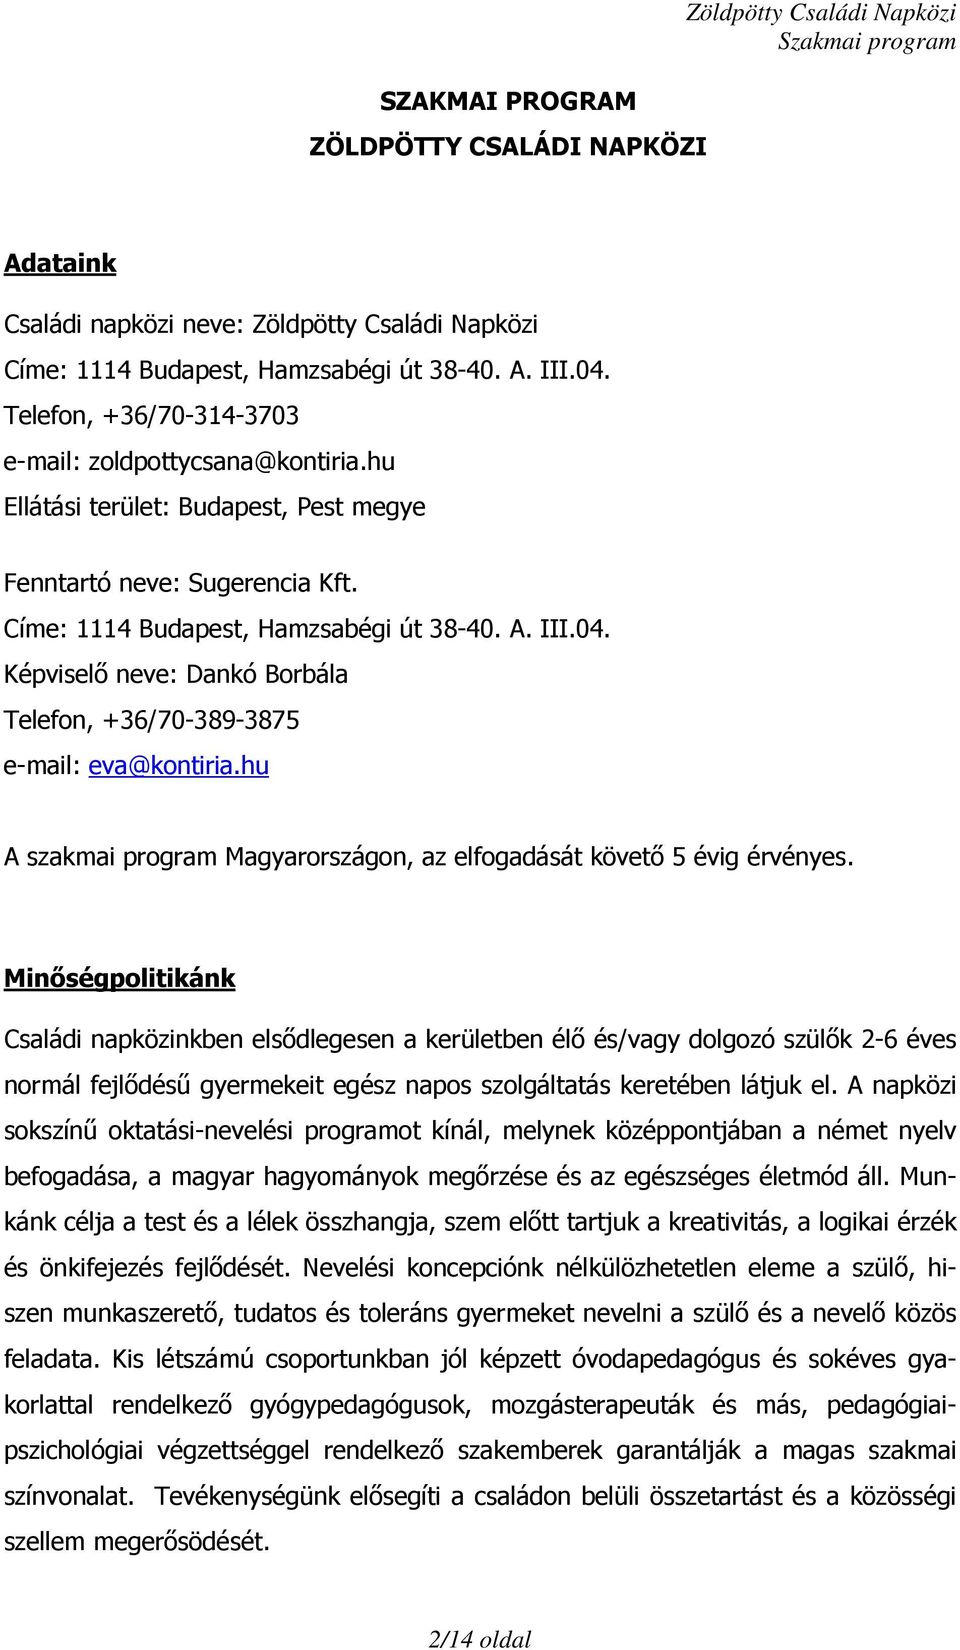 Képviselő neve: Dankó Borbála Telefon, +36/70-389-3875 e-mail: eva@kontiria.hu A szakmai program Magyarországon, az elfogadását követő 5 évig érvényes.